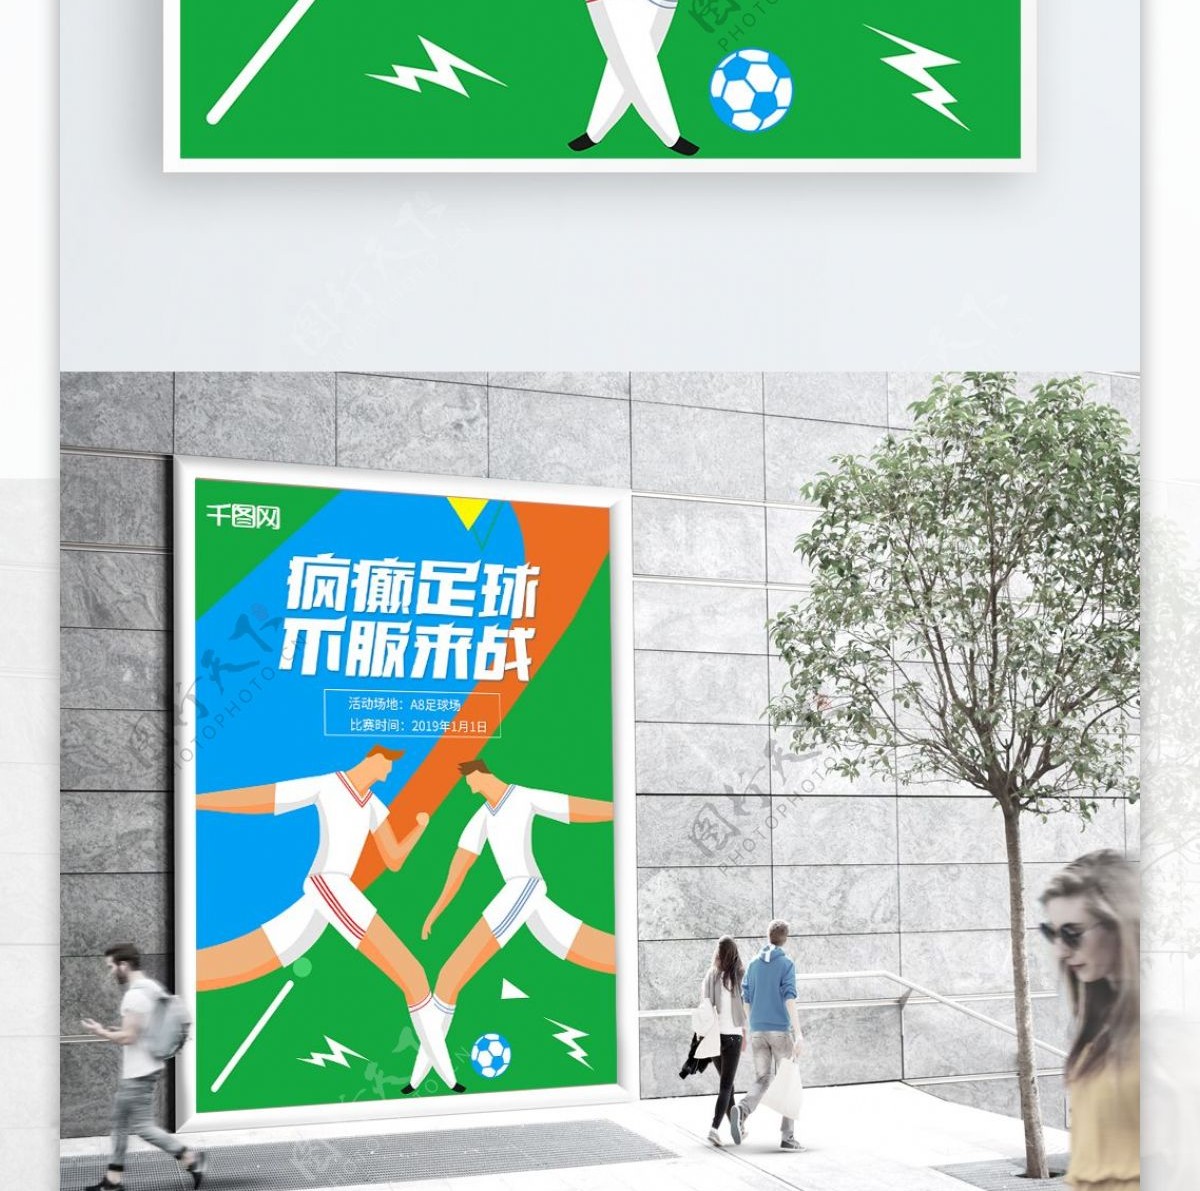 原创热血竞技足球比赛宣传海报